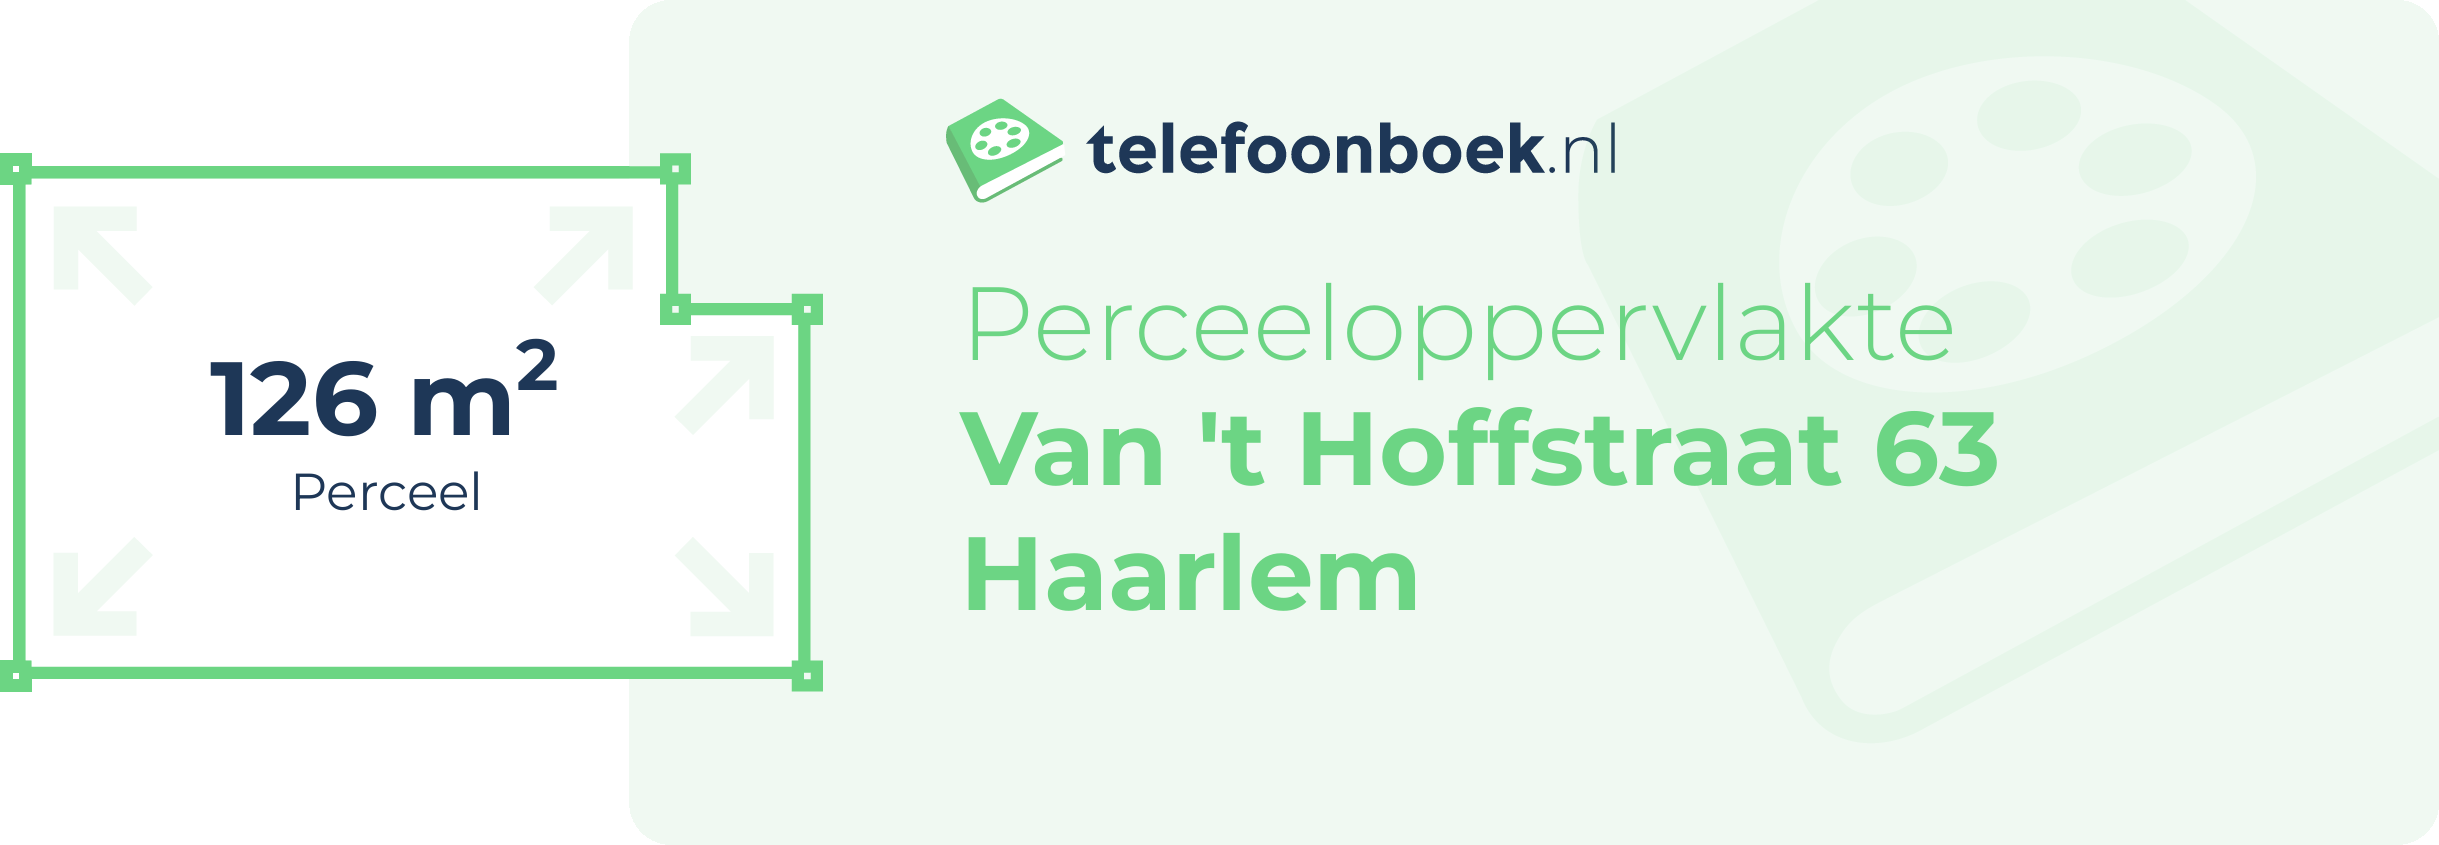 Perceeloppervlakte Van 't Hoffstraat 63 Haarlem